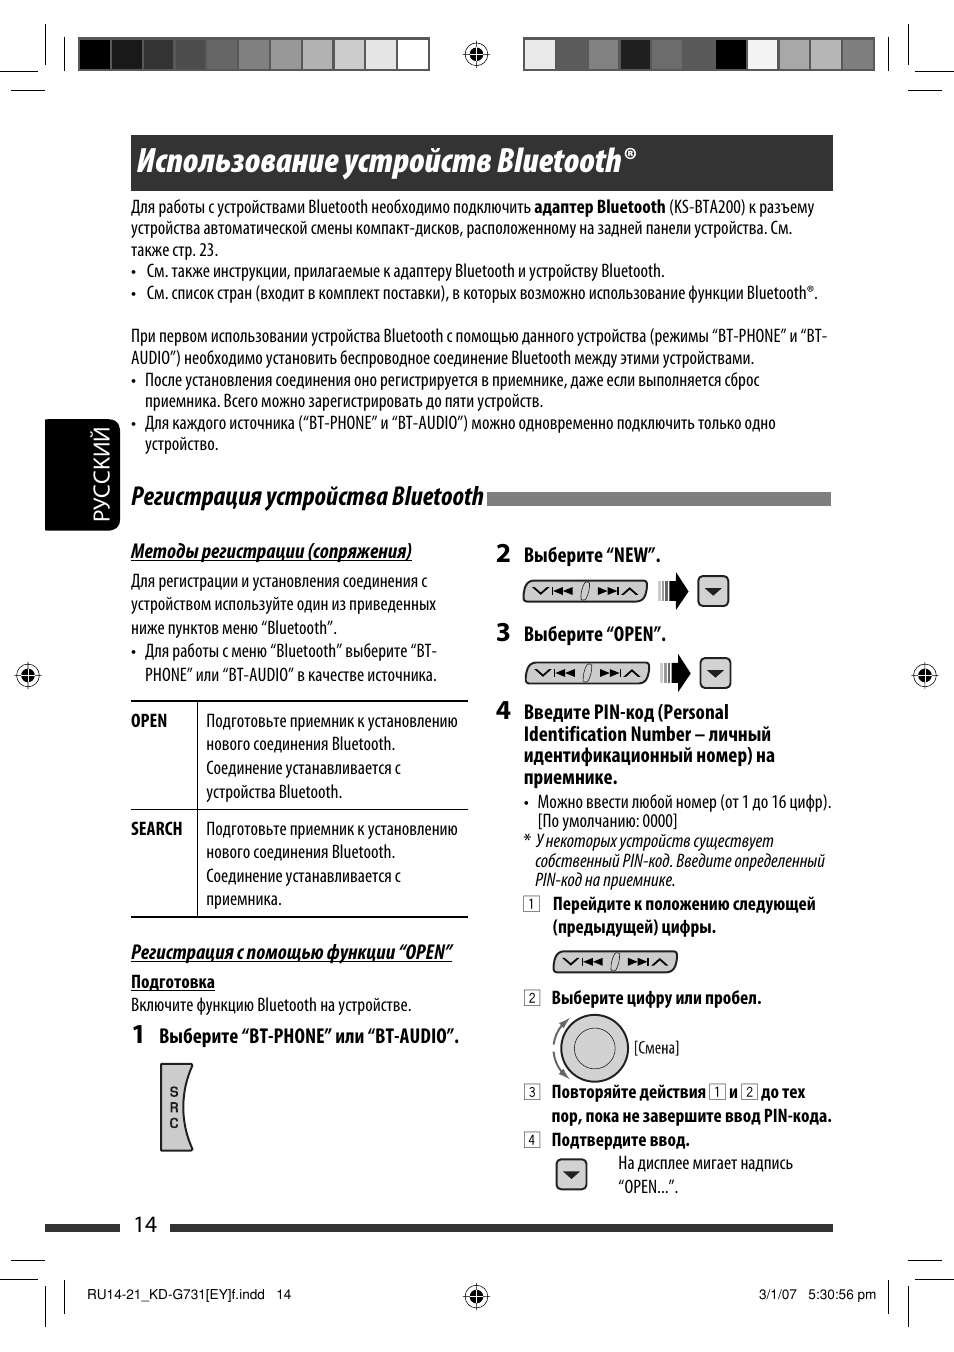 Использование устройств bluetooth, Регистрация устройства bluetooth | JVC KD-G731  User Manual | Page 90 / 117 | Original mode